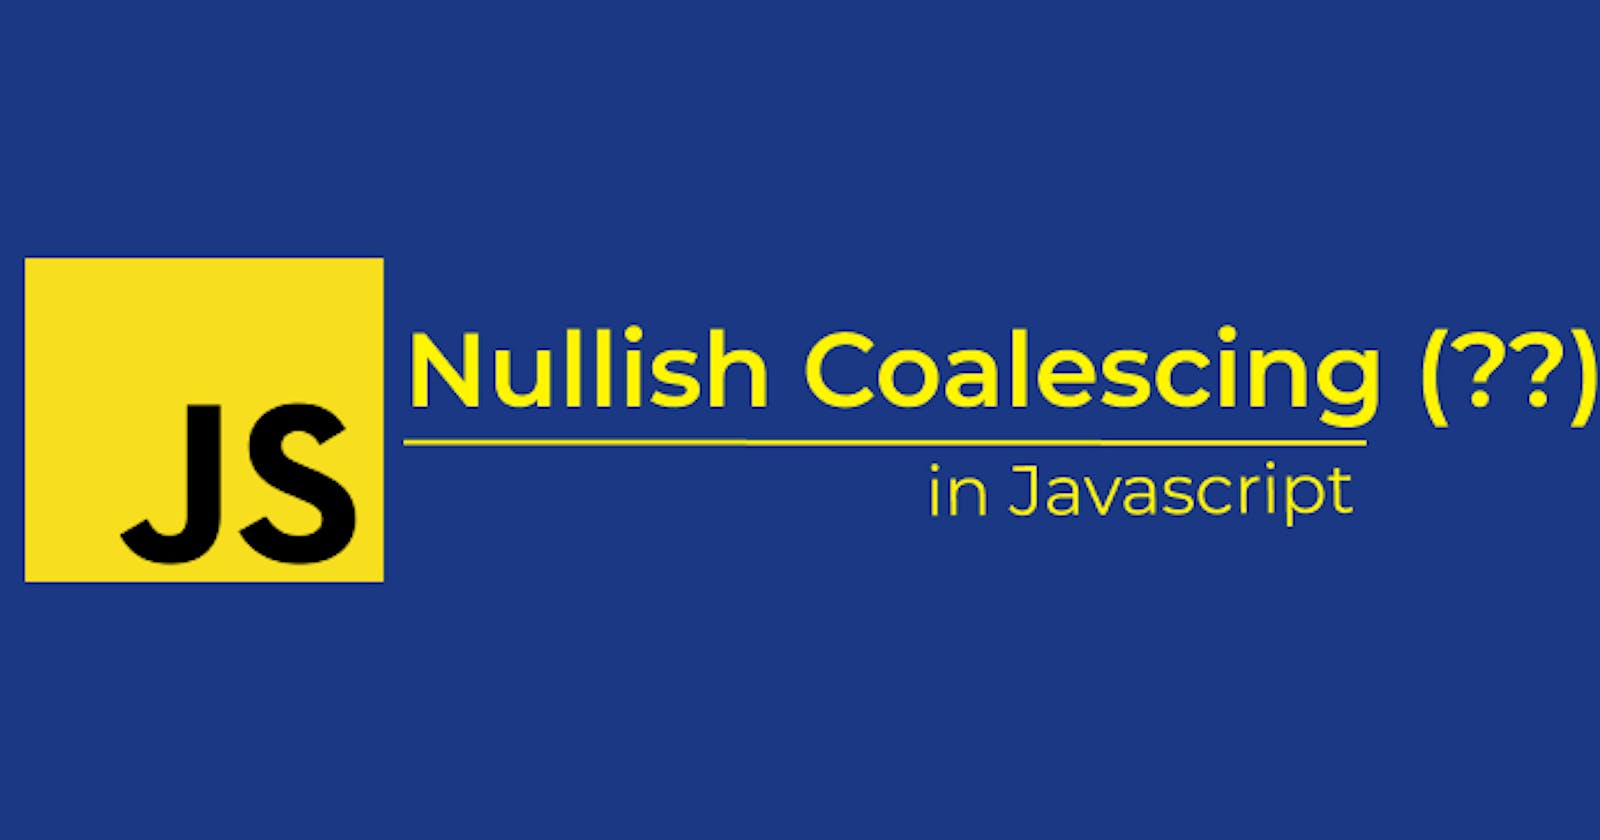 Understanding Nullish Coalescing (??)